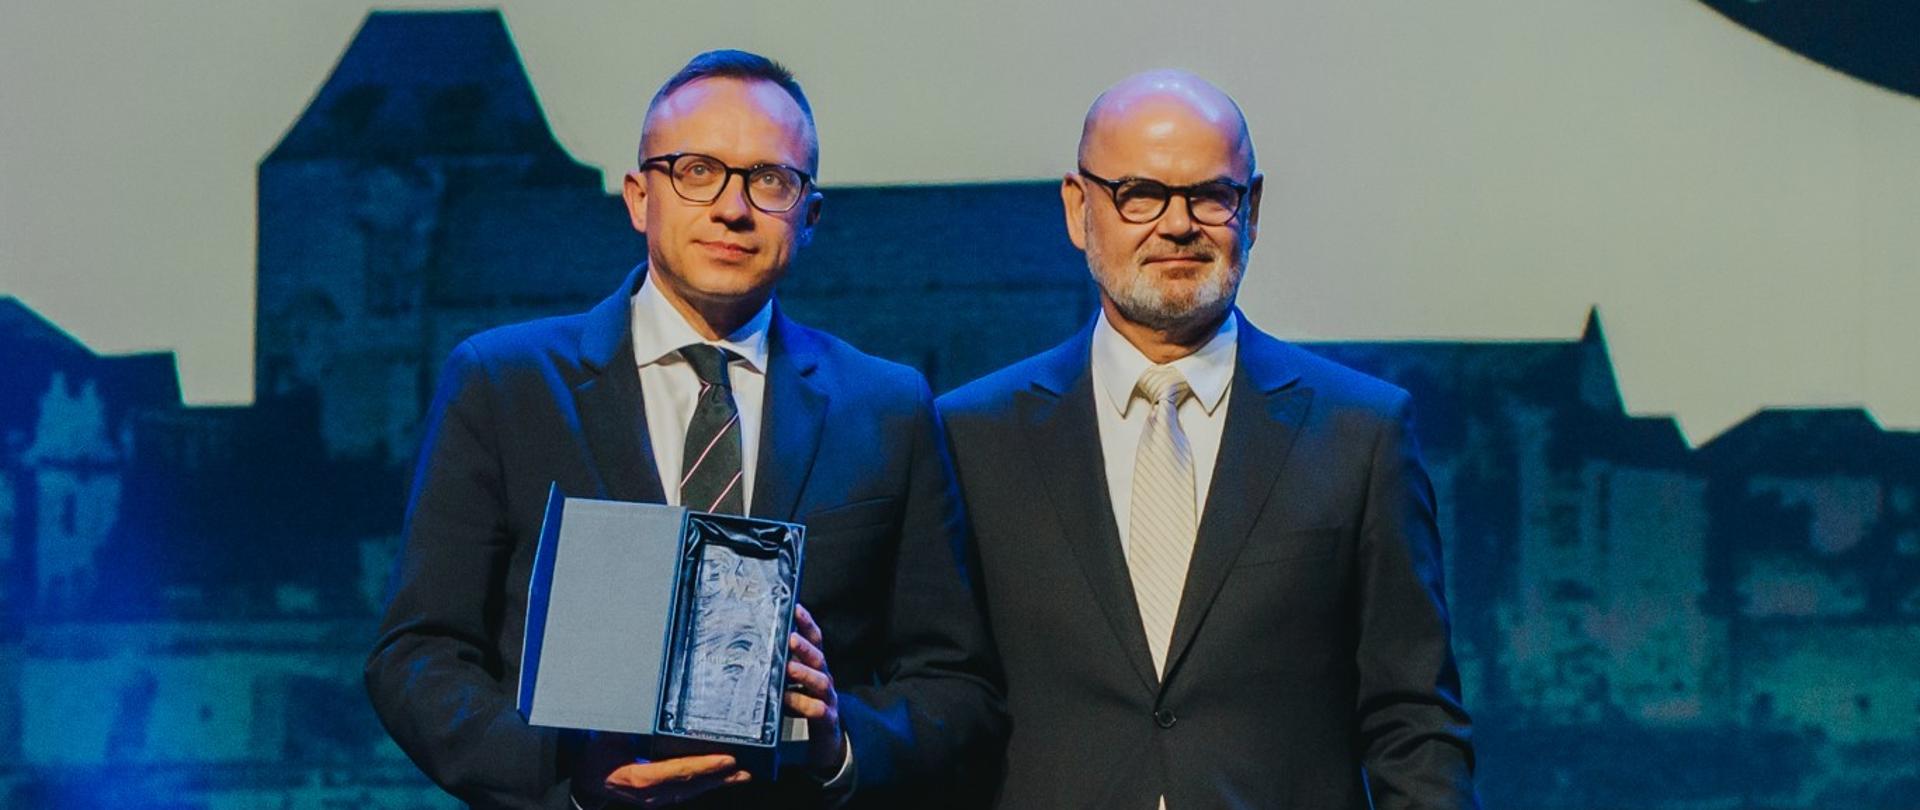 Wiceminister Artur Soboń odbiera odbieraną nagrodę podczas Welconomy Forum